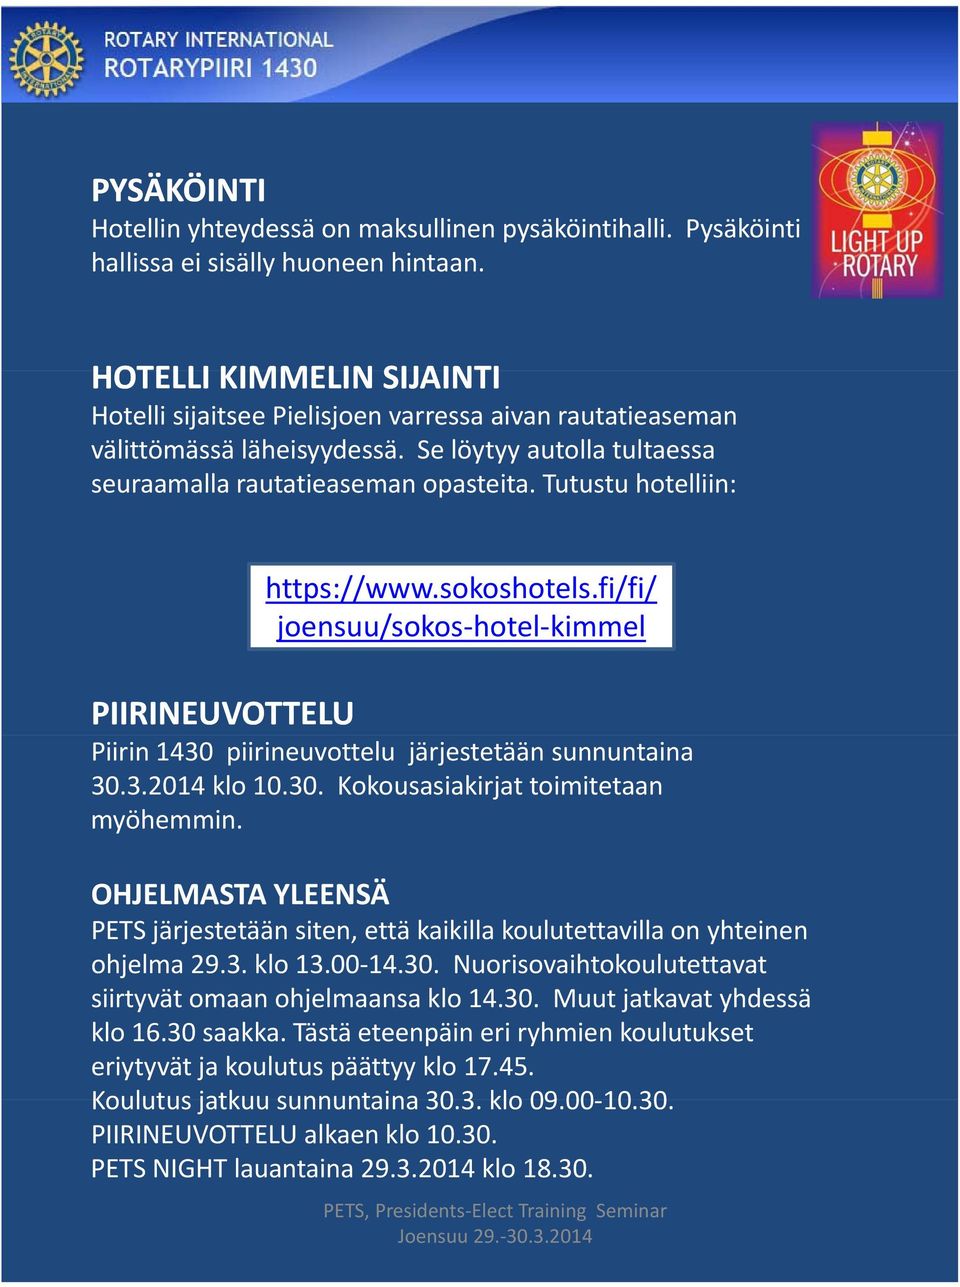 Tutustu hotelliin: PIIRINEUVOTTELU https://www.sokoshotels.fi/fi/ joensuu/sokos hotel kimmel Piirin 1430 piirineuvottelu järjestetään sunnuntaina 30.3.2014 klo 10.30. Kokousasiakirjat toimitetaan myöhemmin.